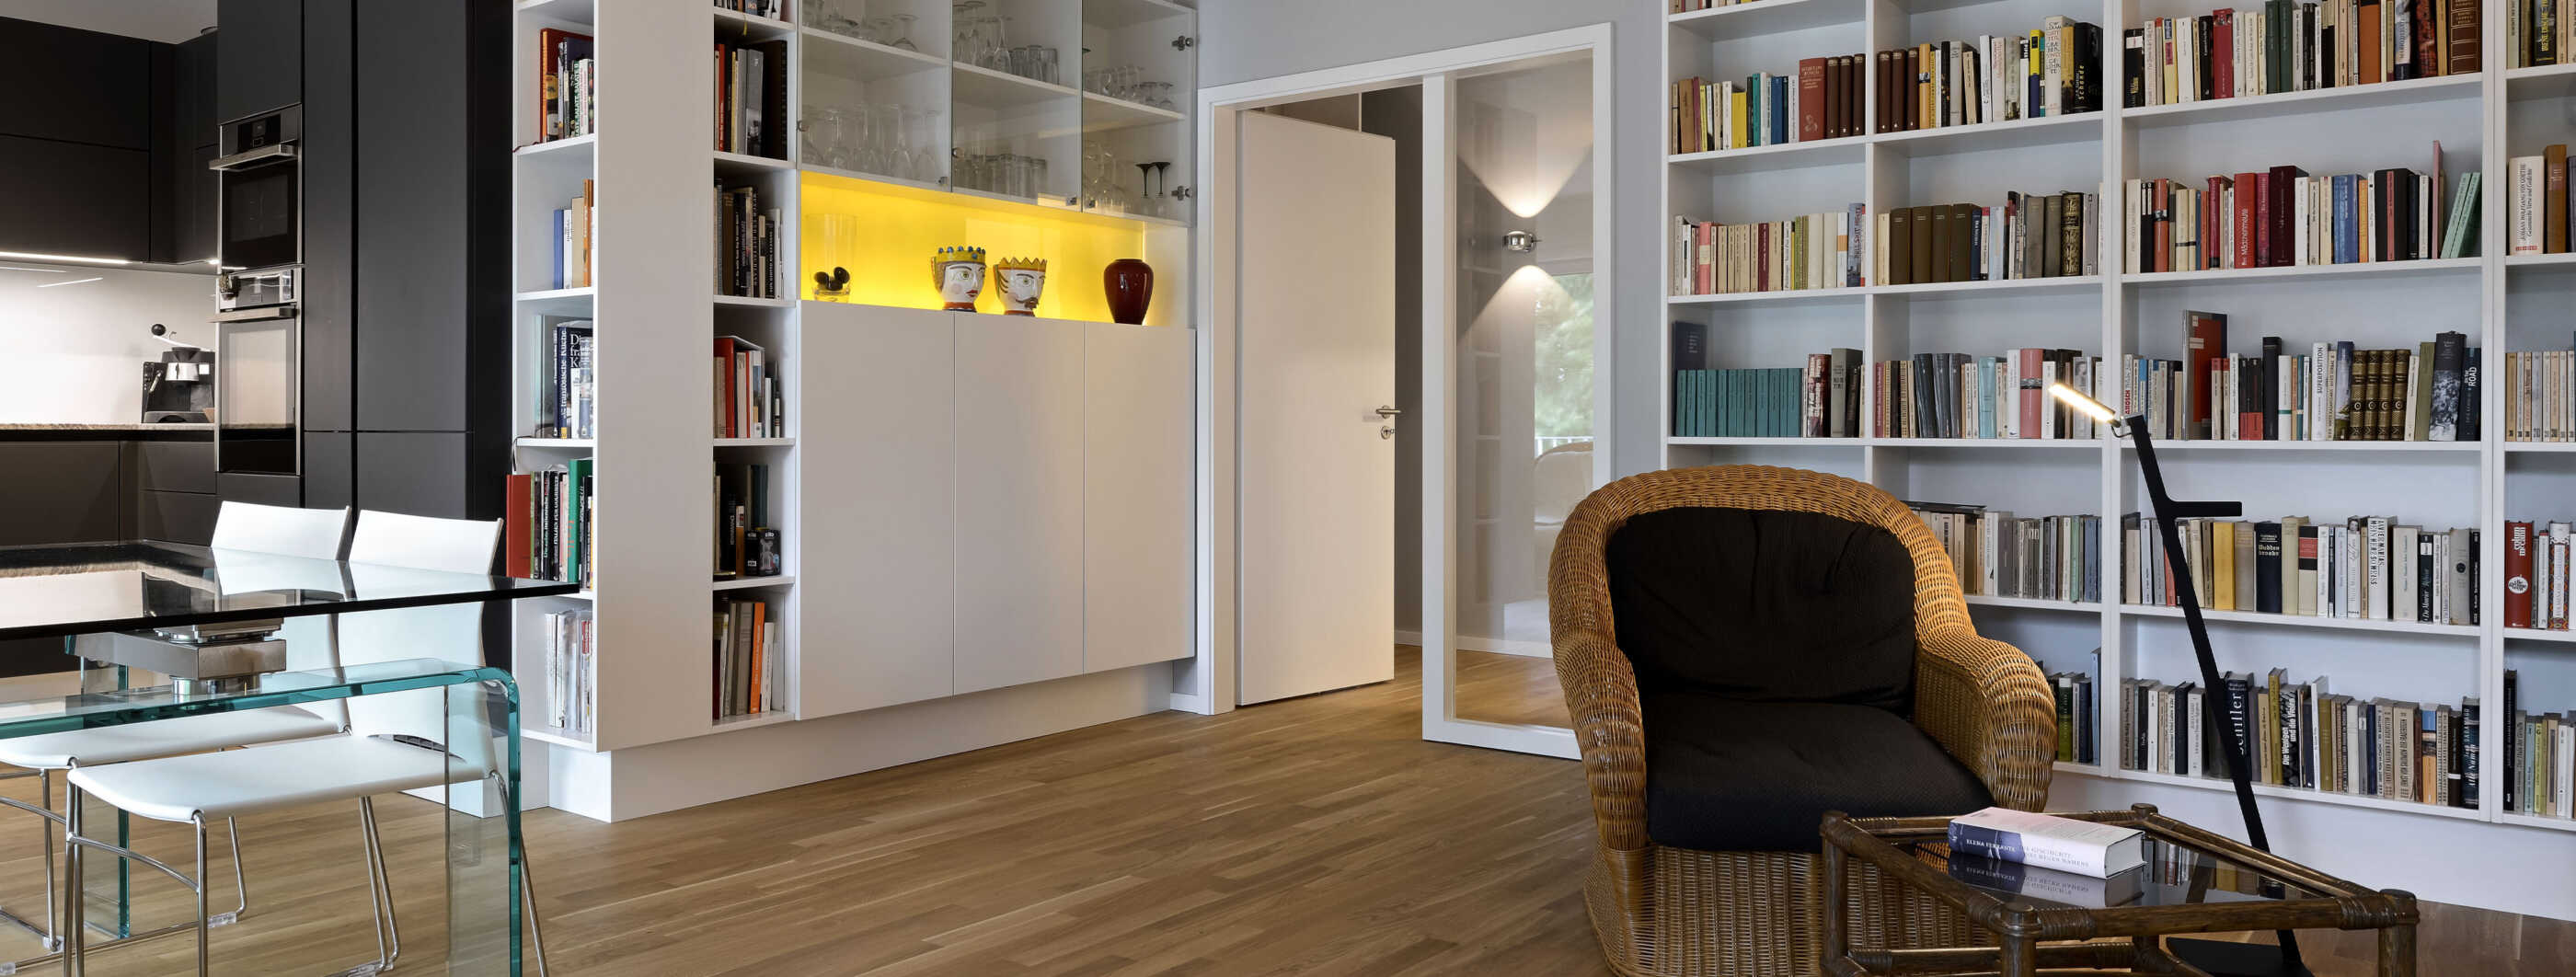 Das Wohnzimmer in einer Wohnung in Hamburg Altona: Ein Bücherregal nimmt die gesamte rechte Seite ein, davor stehen ein Sessel, eine Leseleuchte und ein kleiner Tisch. Links ist eine offene Küche zu sehen. (Foto: Prediger Lichtberater)